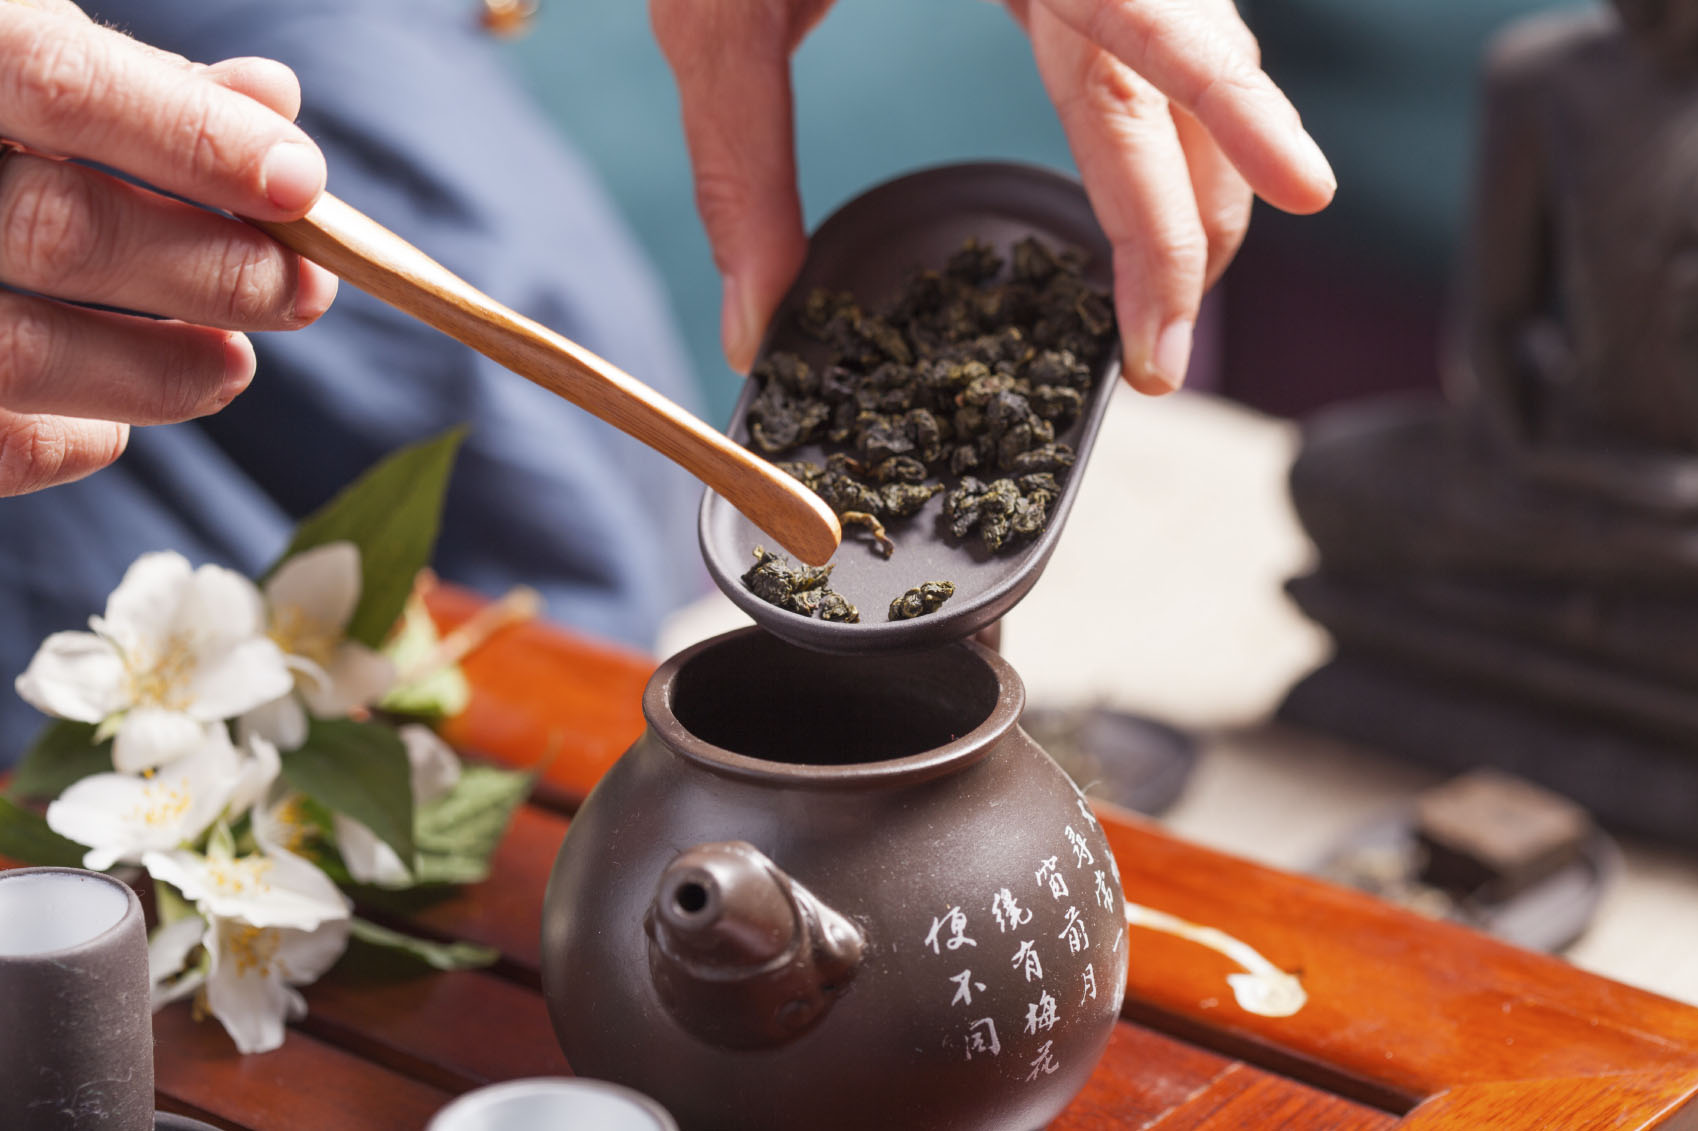  از طعم بهترین چای کوهی تایوان در فستیوال تایوان در هاربرفرانت سنتر لذت ببرید(oksix/iStock)